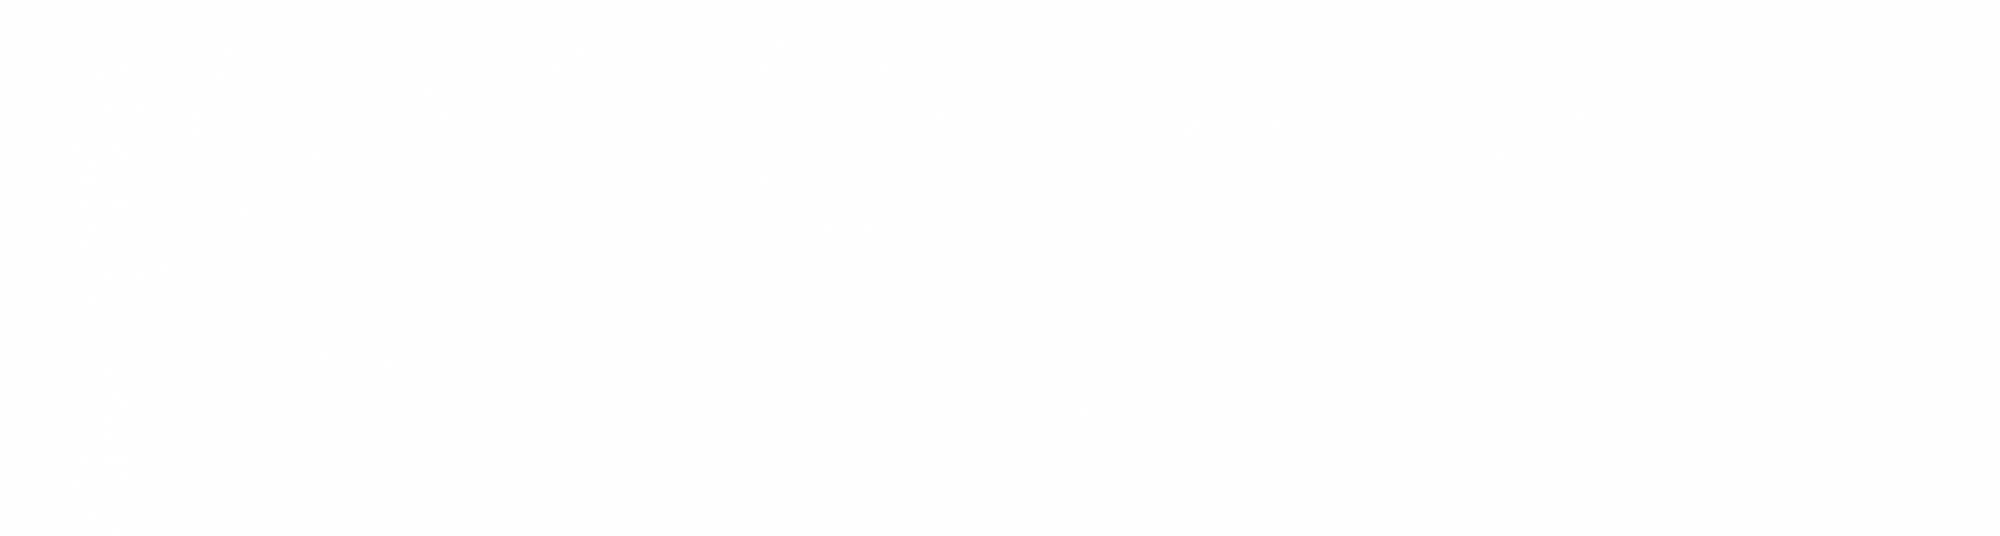 Open Window Media